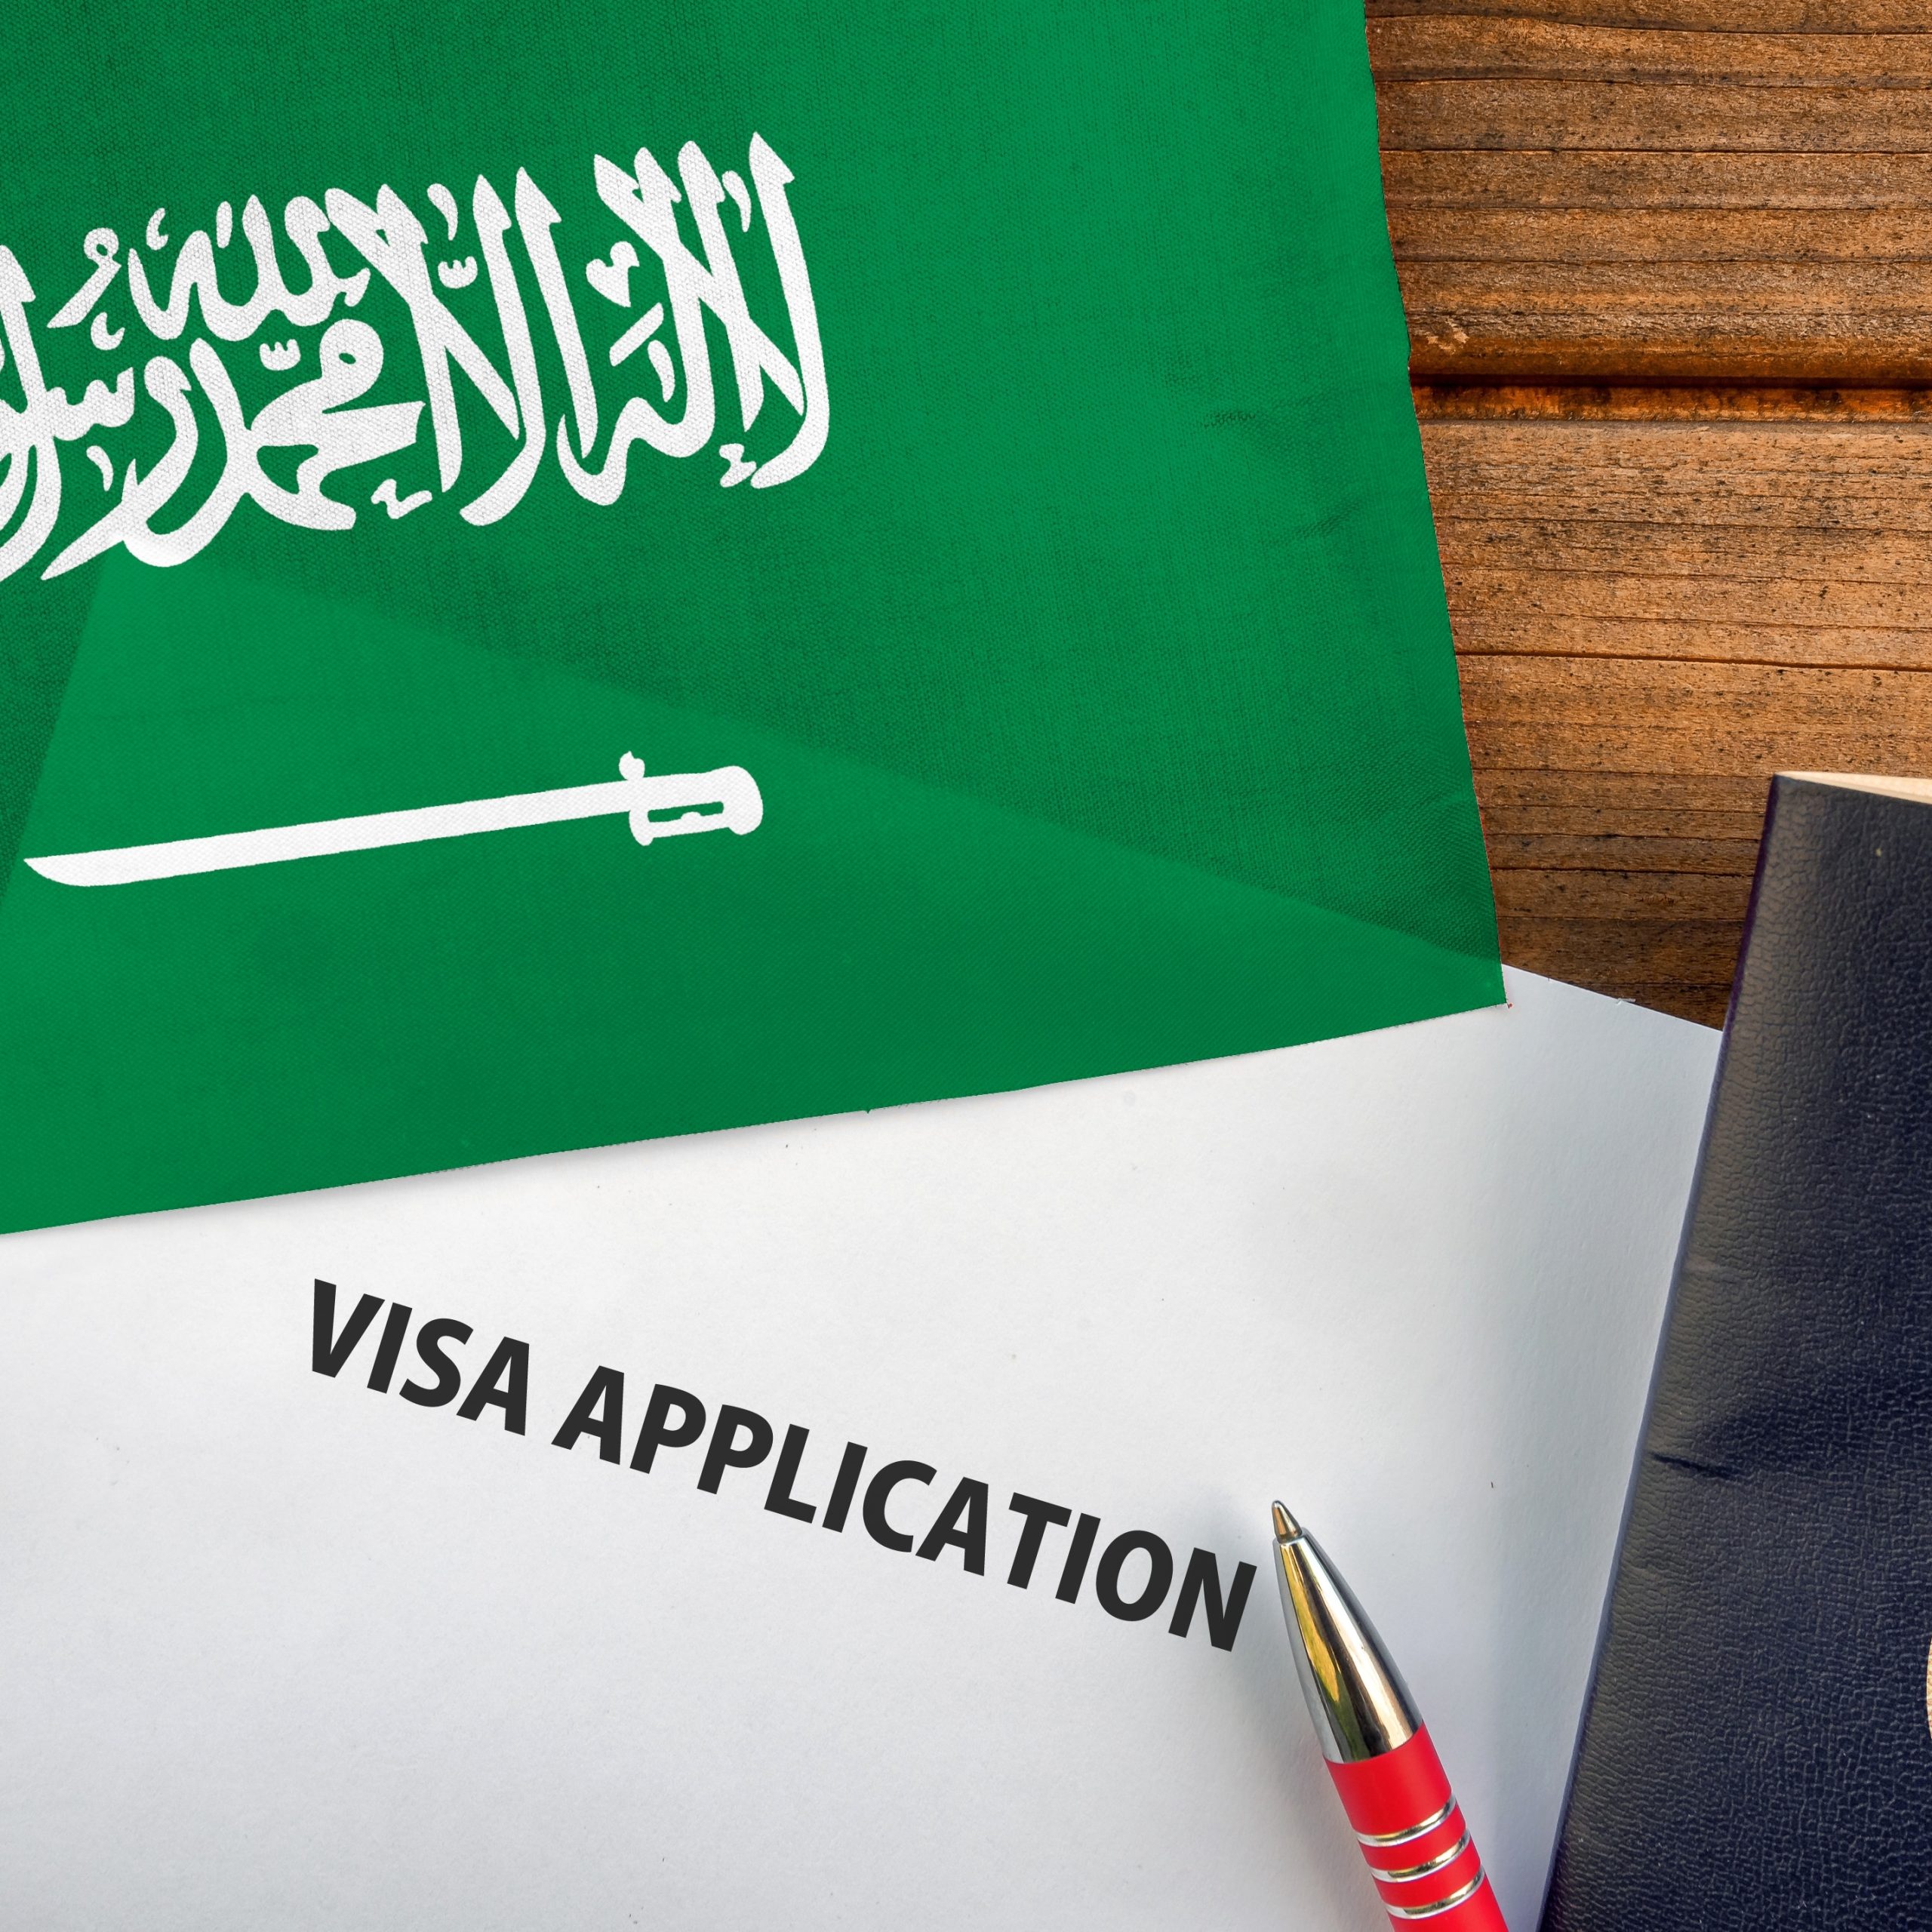 أهم المعلومات للحصول على تأشيرة زيارة المملكة العربية السعودية